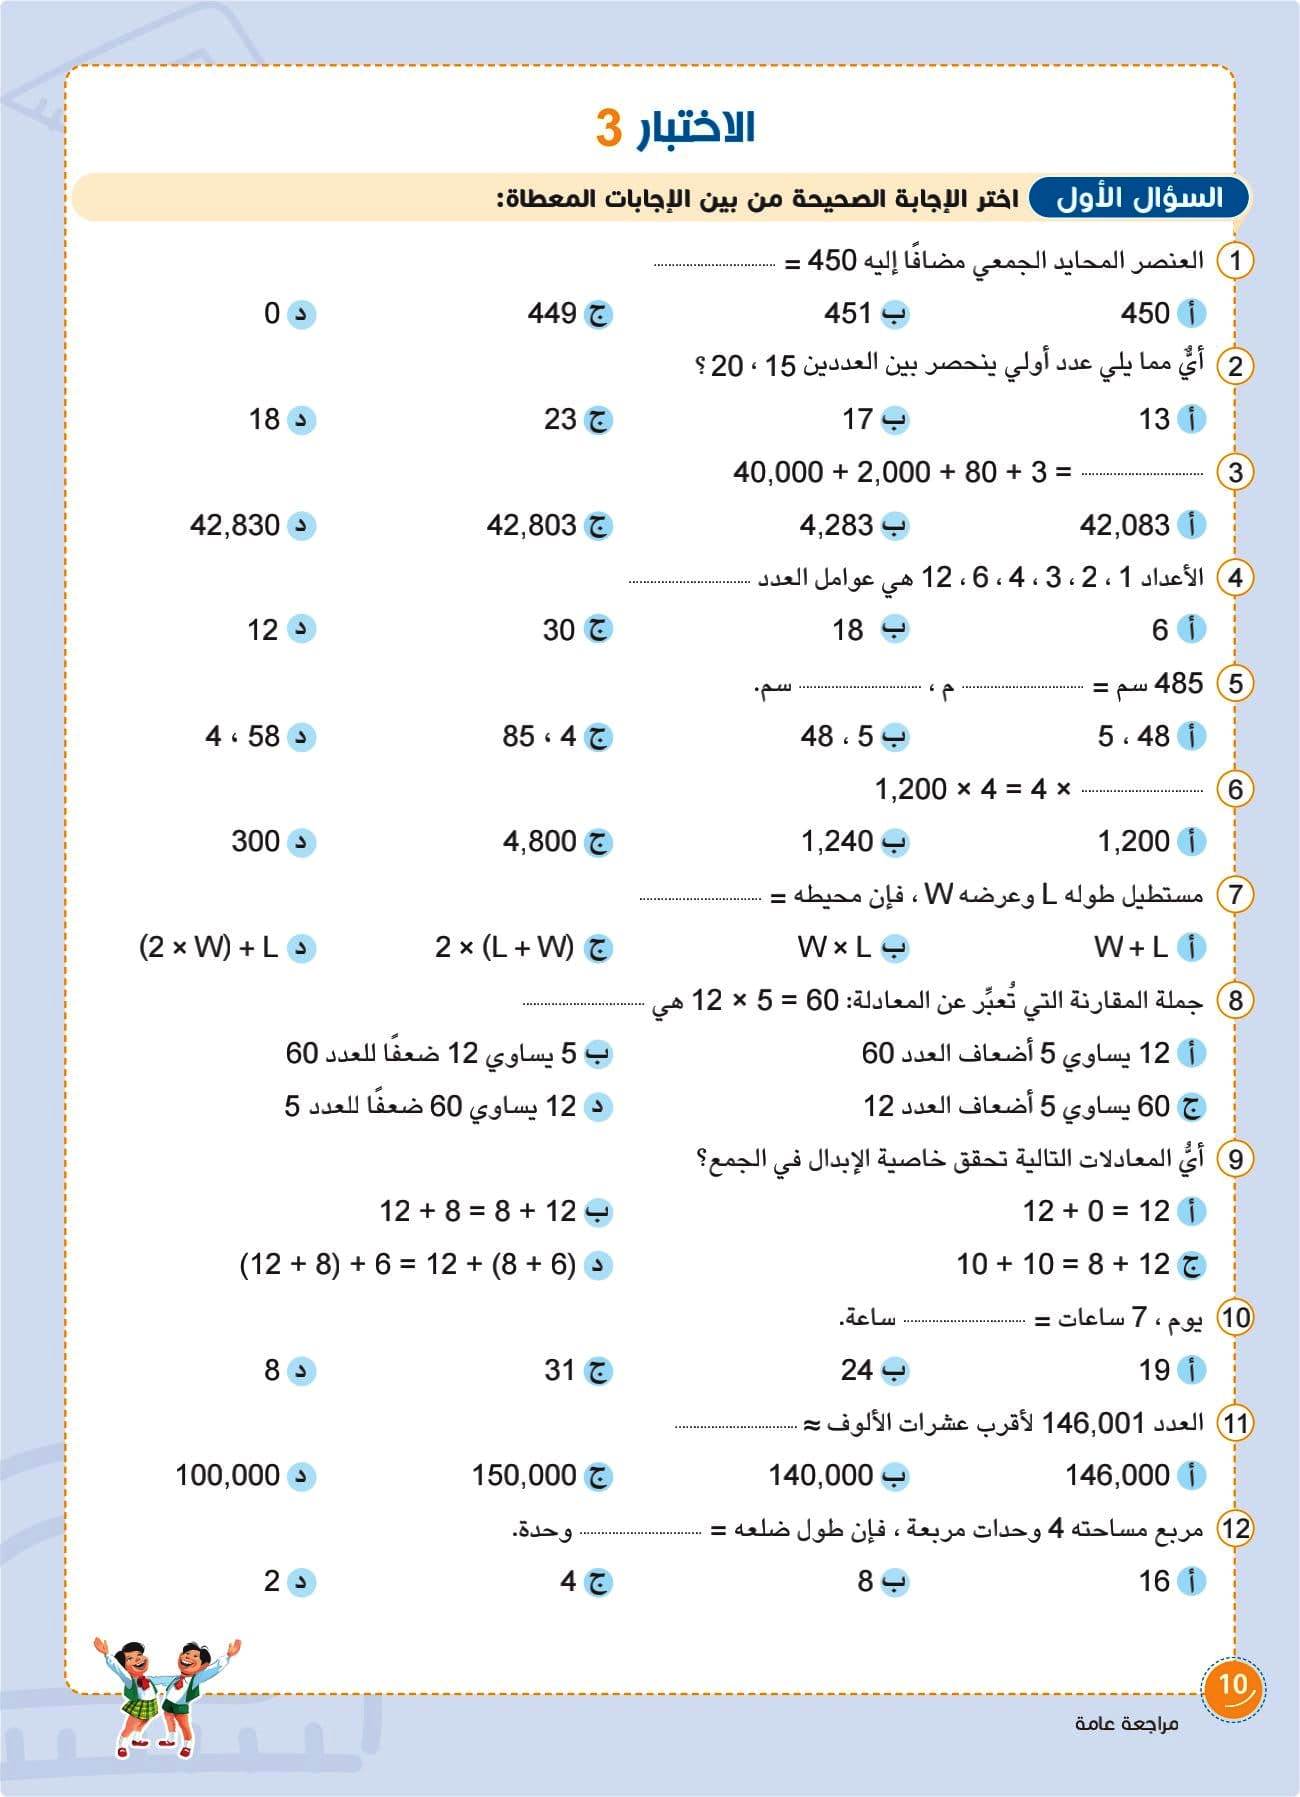 مدرس دوت كوم كتاب سلاح التلميذ مراجعة رياضيات للصف السادس الابتدائى الترم الاول أ/ محمد حمدى	